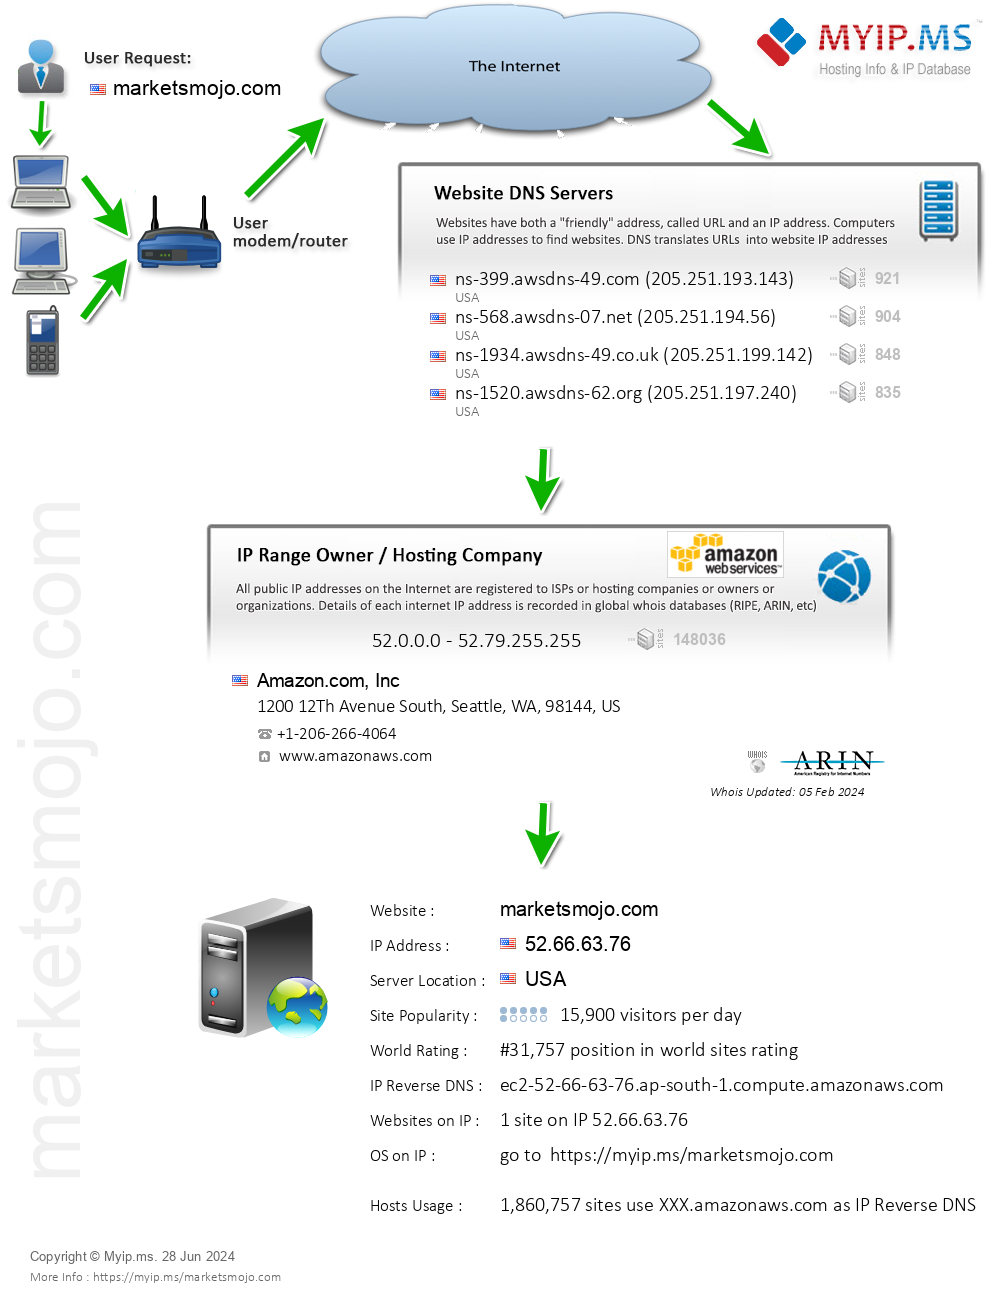 Marketsmojo.com - Website Hosting Visual IP Diagram